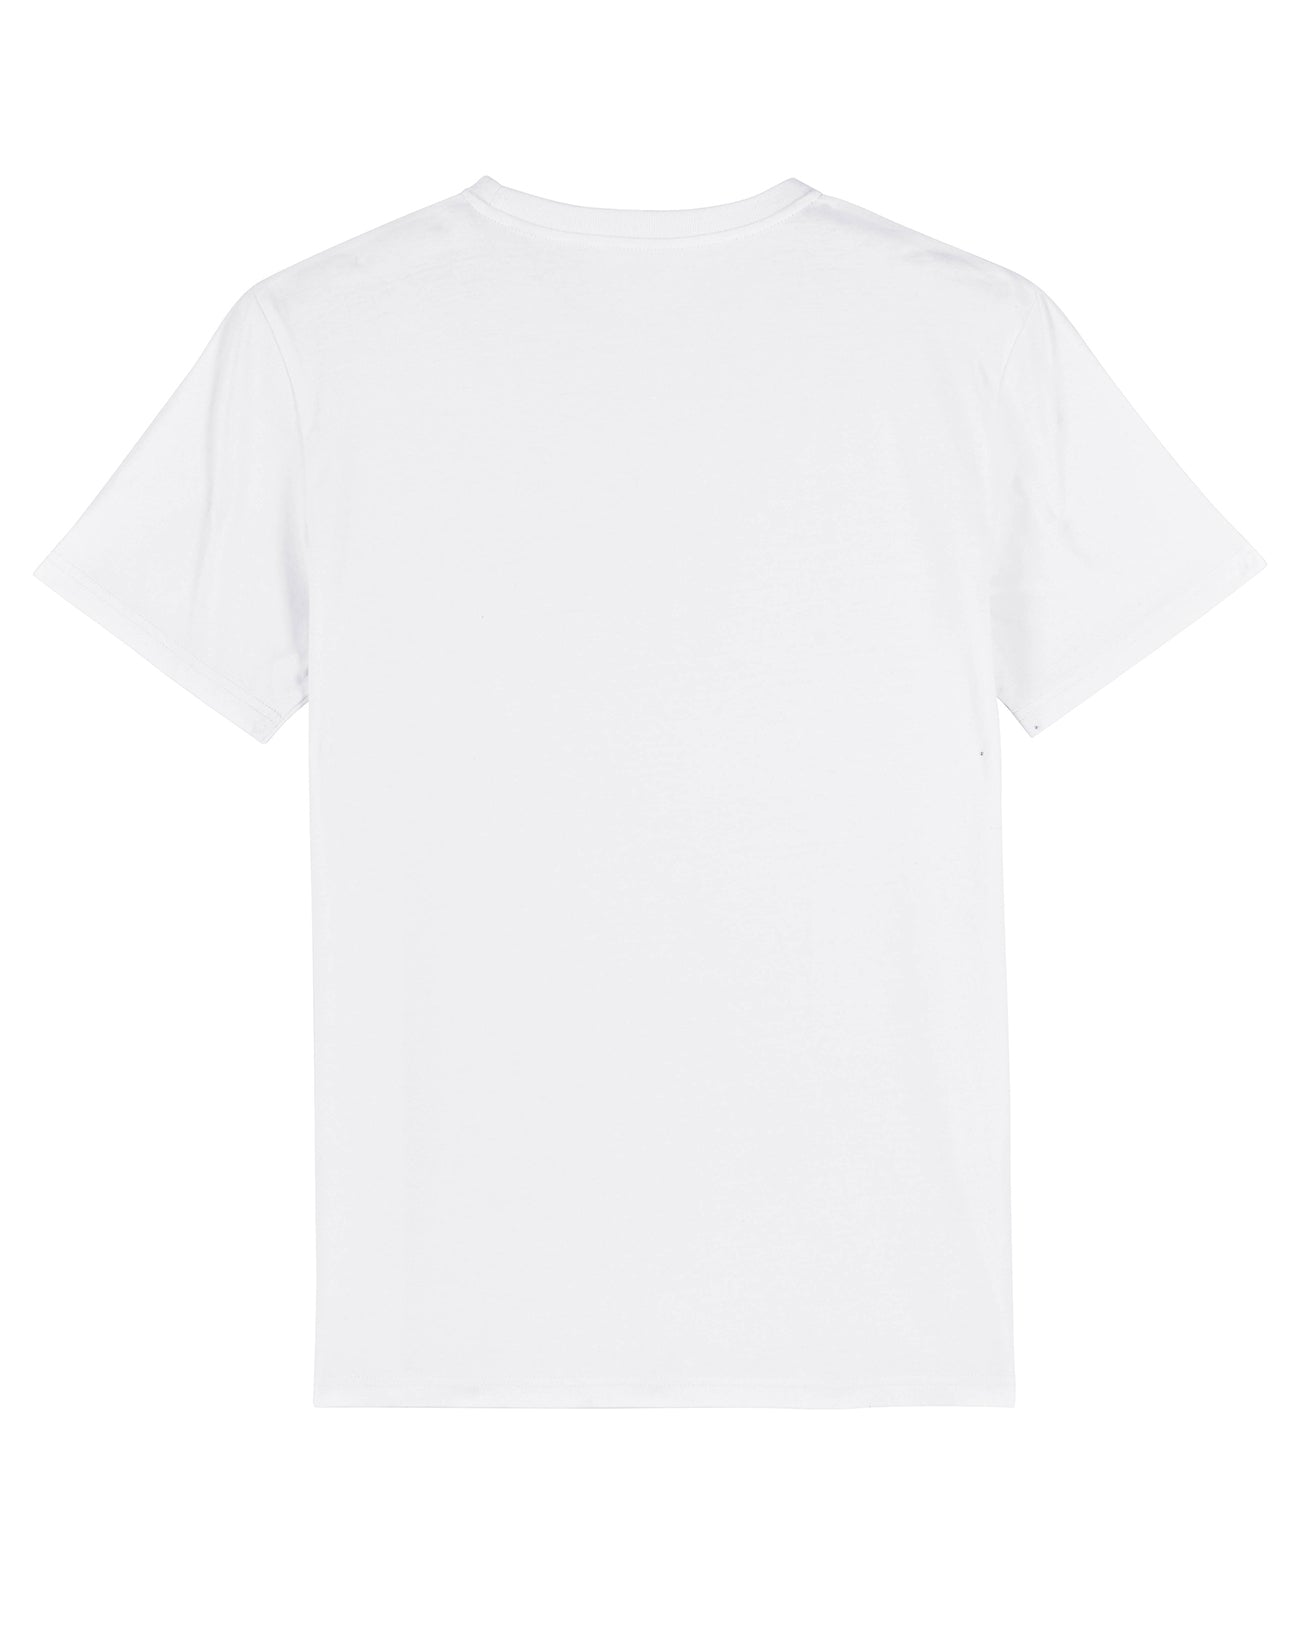 Hang Ten Shark T-shirt - White